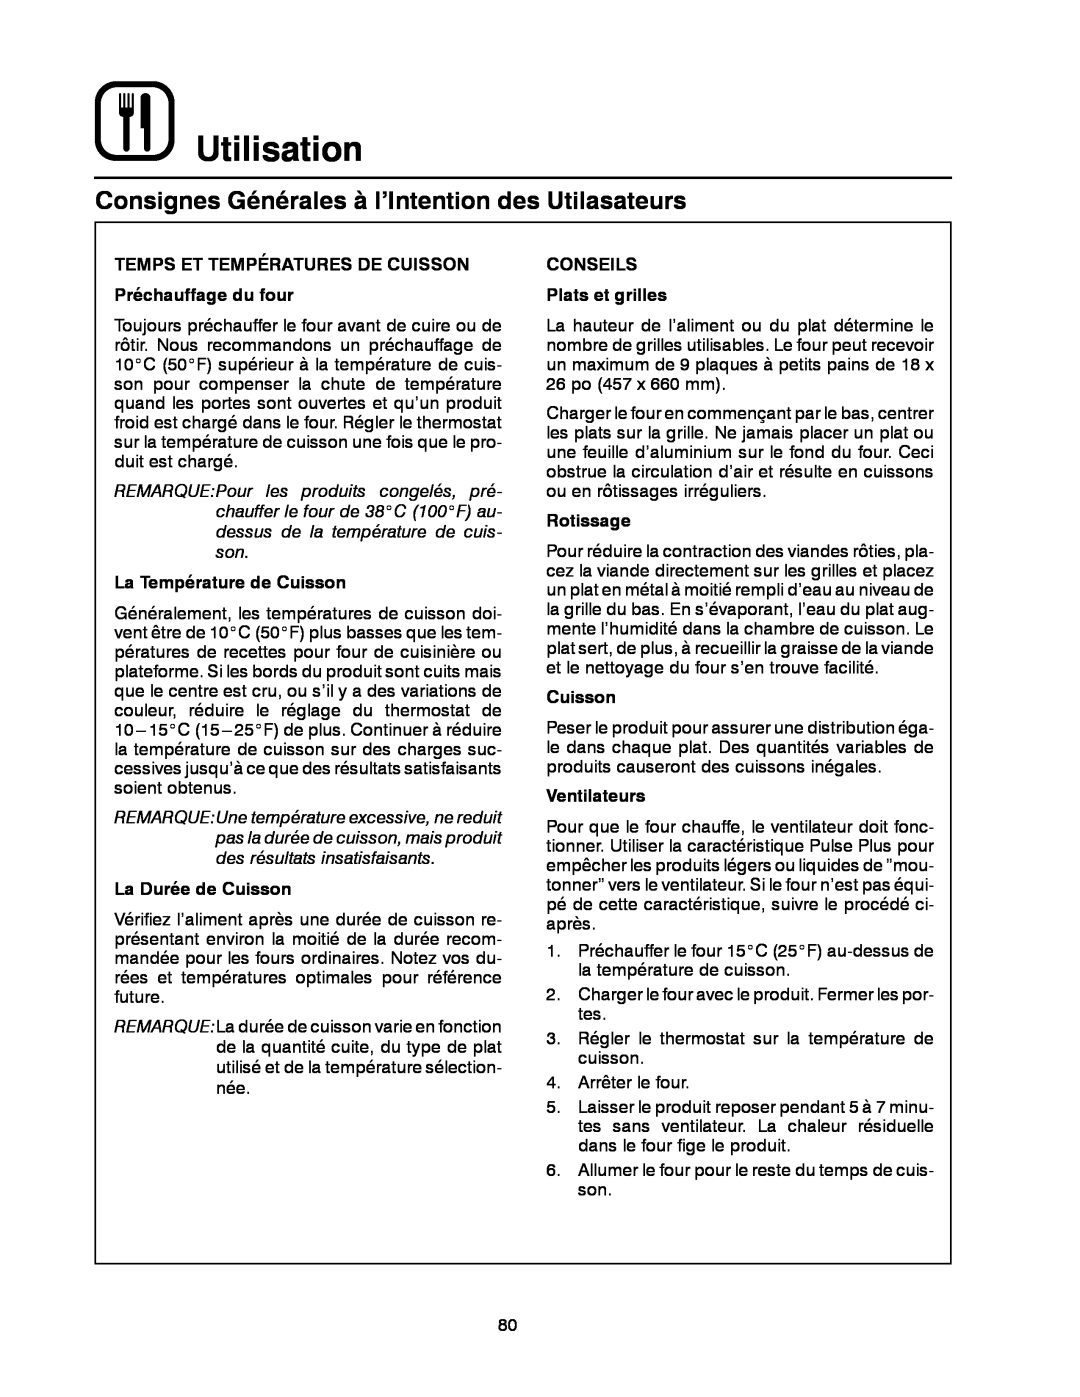 Blodgett DFG-50 Consignes Générales à l’Intention des Utilasateurs, Utilisation, La Température de Cuisson, Rotissage 